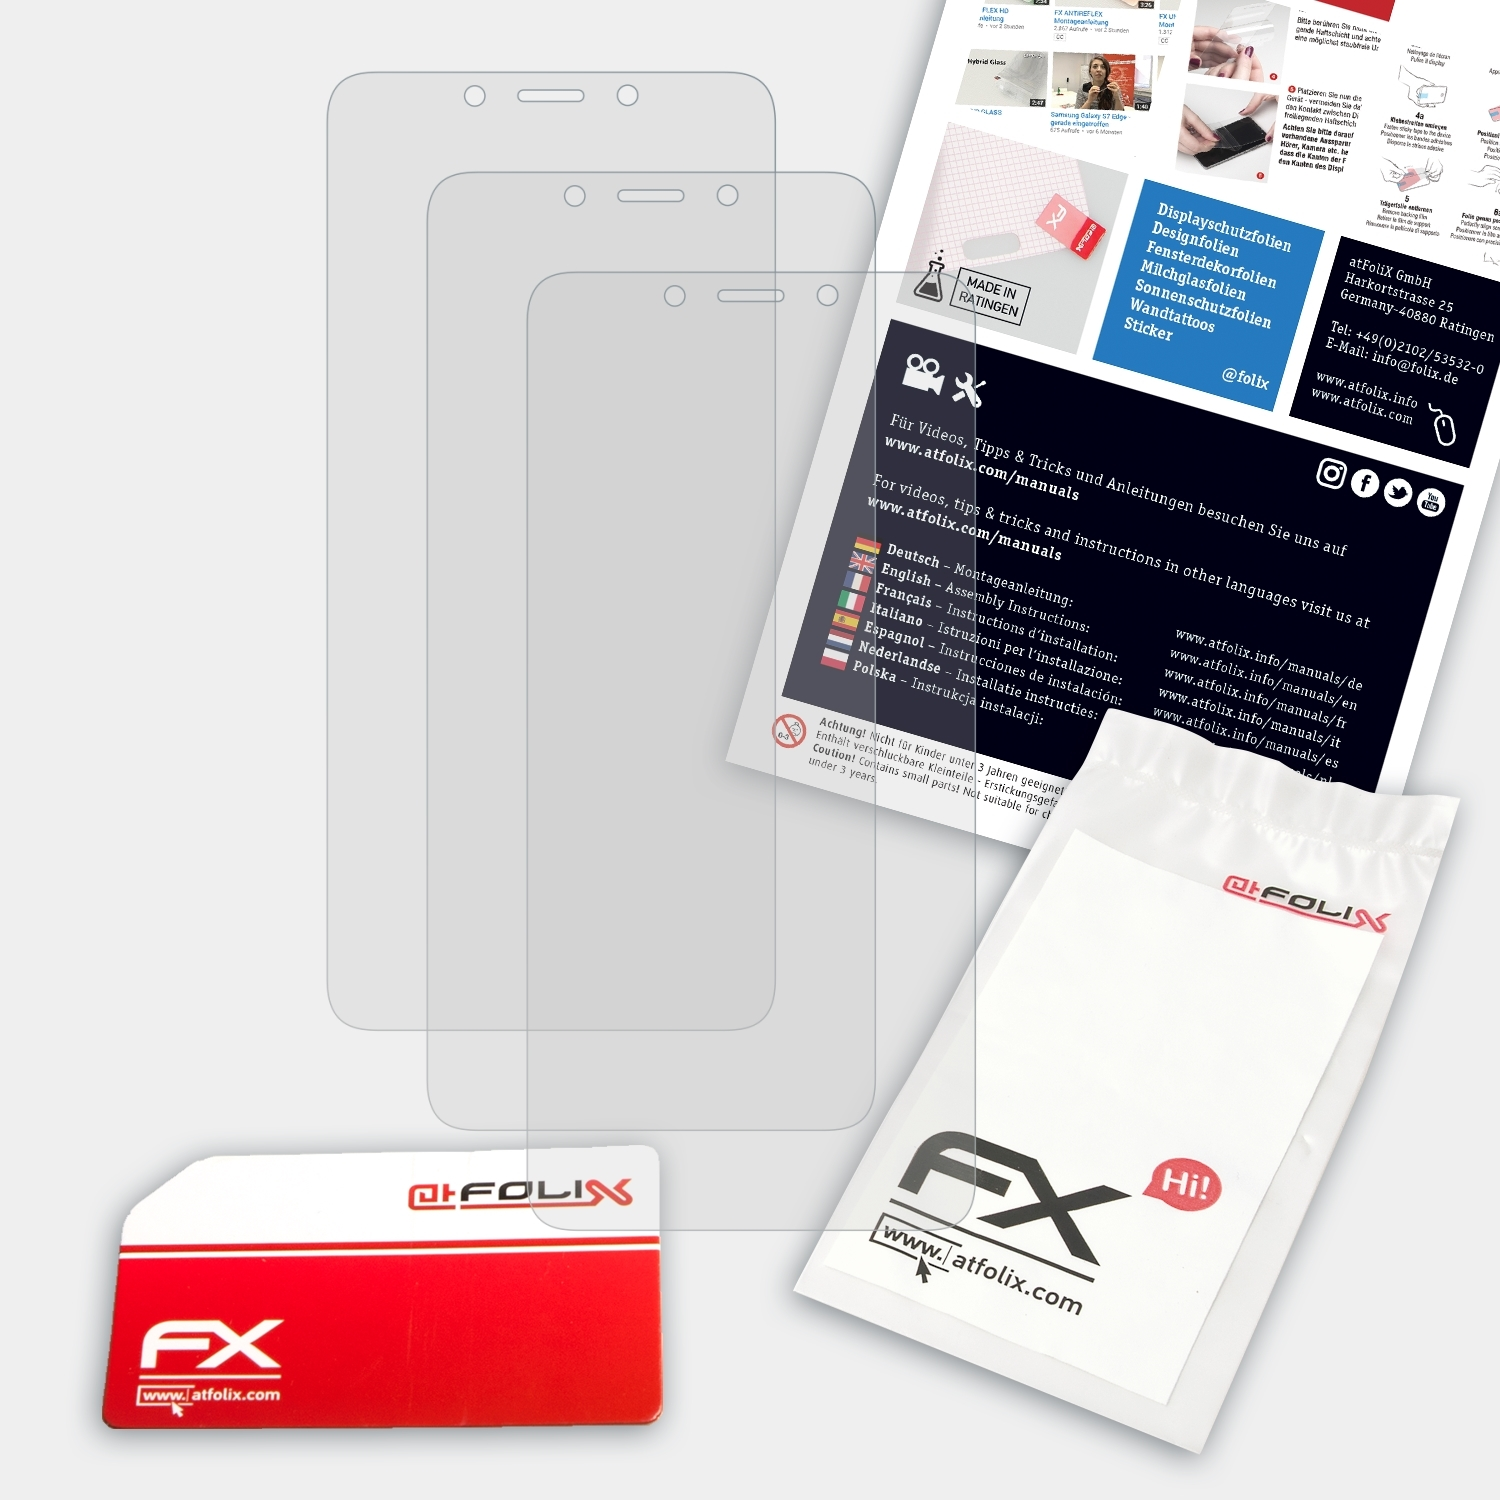 ATFOLIX 3x Displayschutz(für 6) Redmi Xiaomi FX-Antireflex